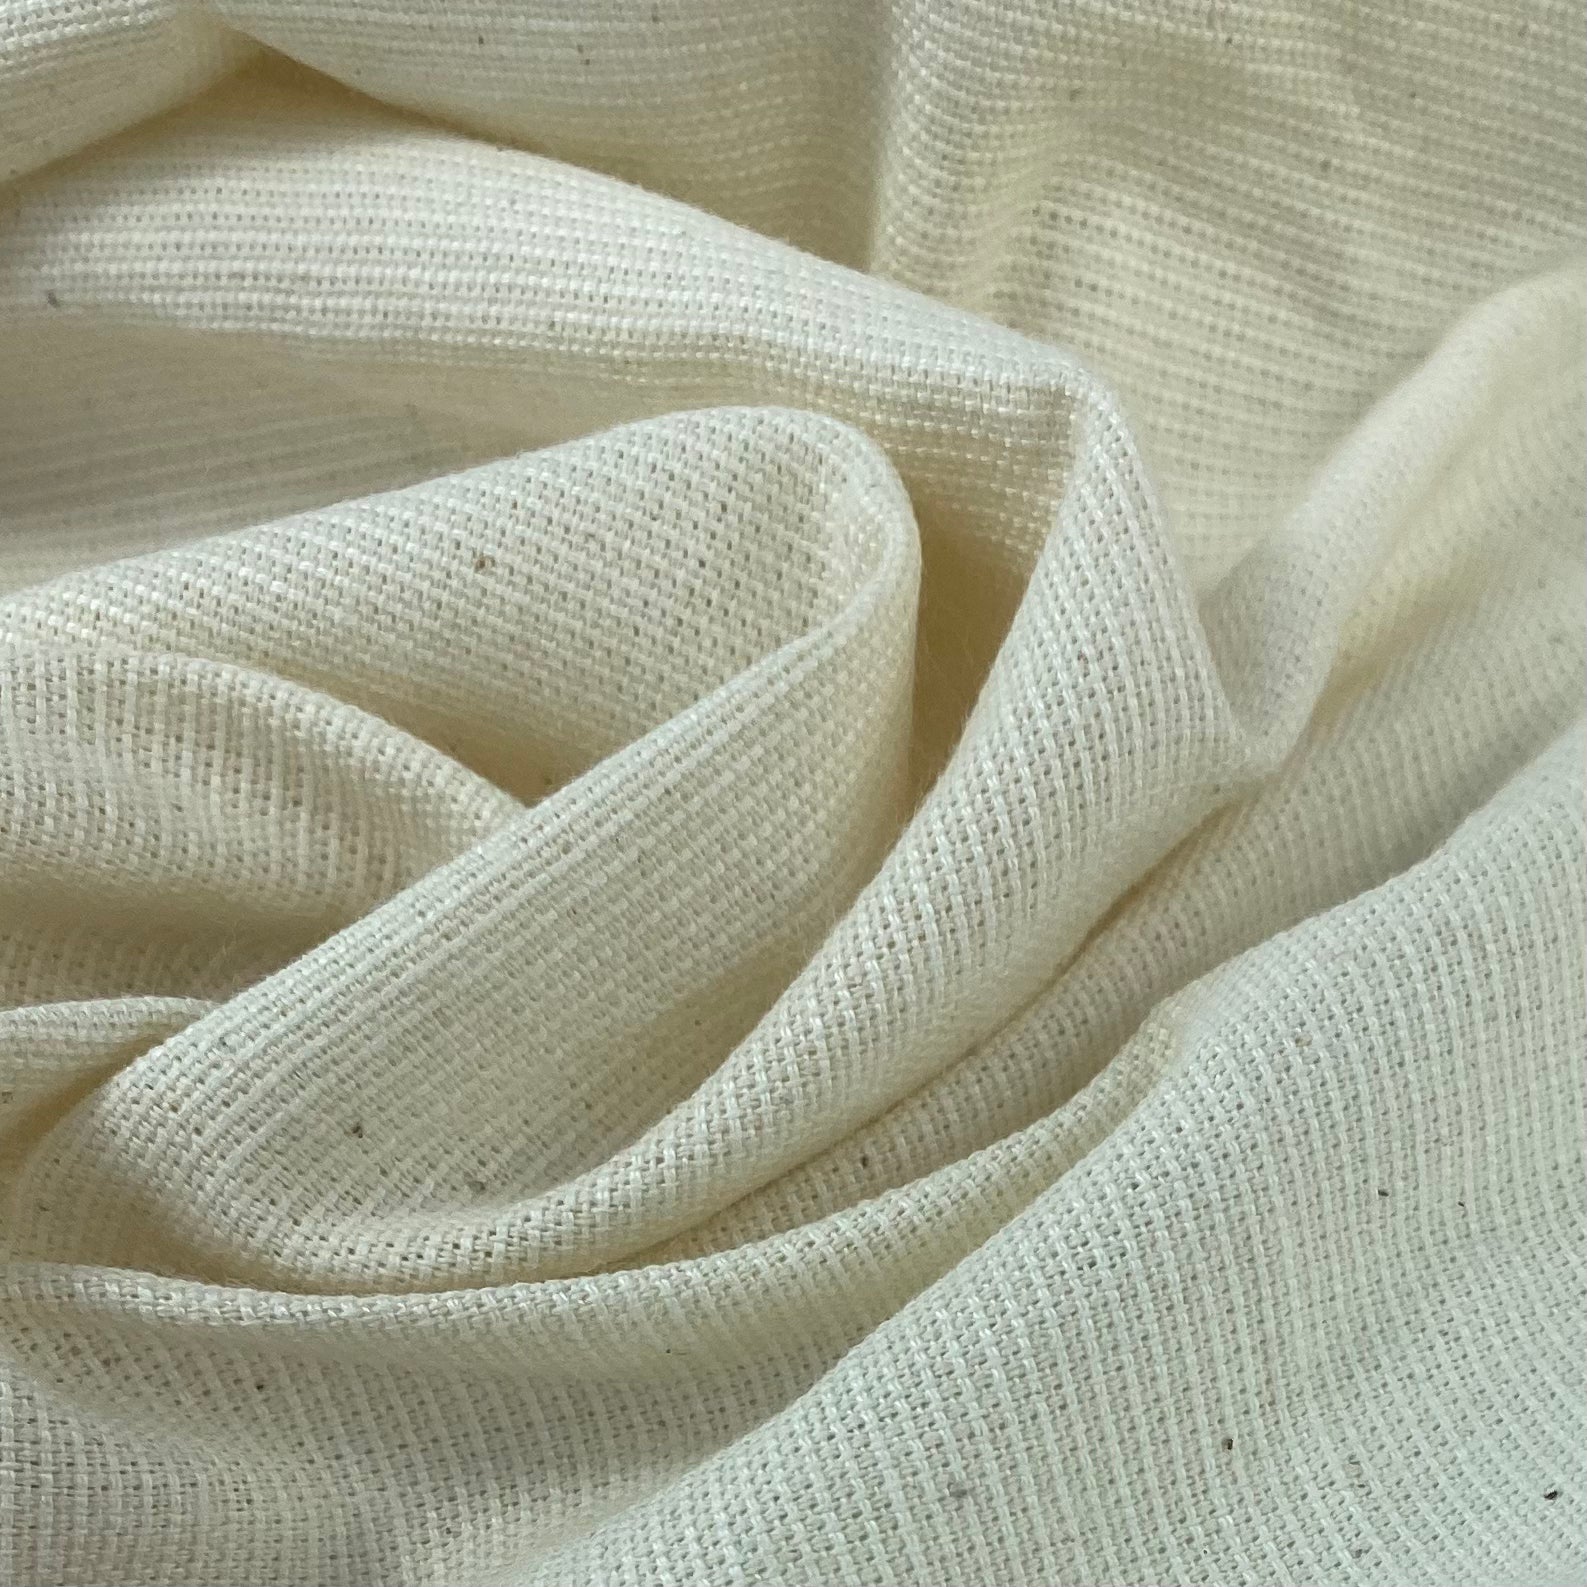 Woven Cotton - 5oz - Natural